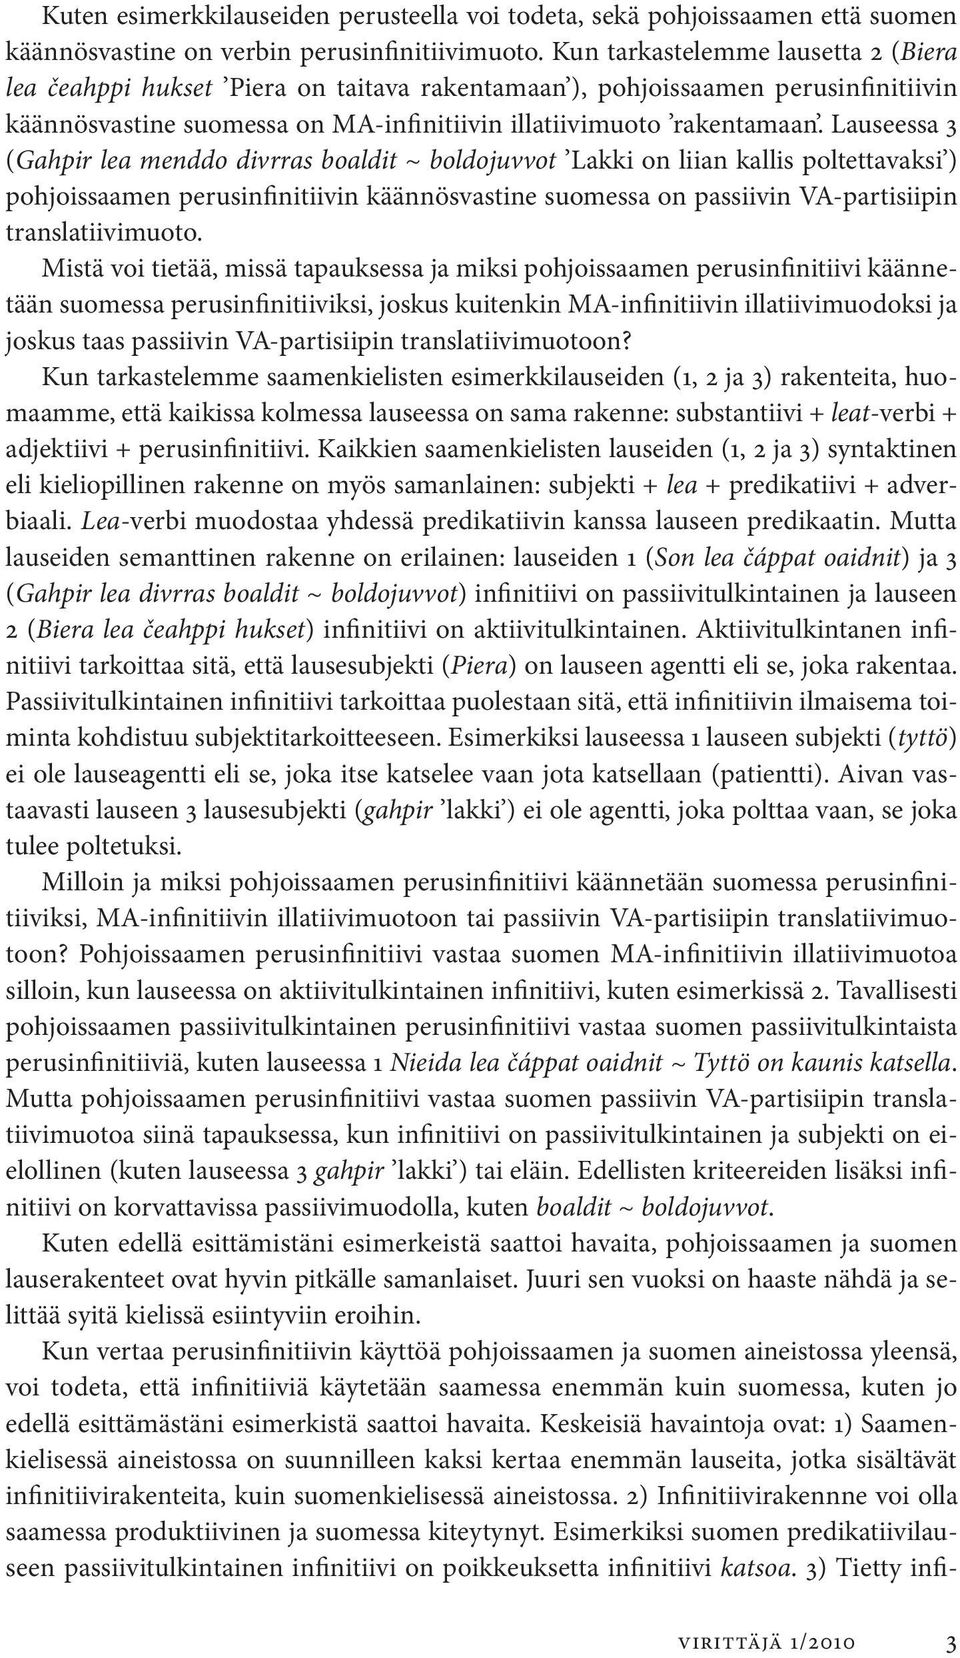 Lauseessa 3 (Gahpir lea menddo divrras boaldit ~ boldojuvvot Lakki on liian kallis poltettavaksi ) pohjoissaamen perusinfinitiivin käännösvastine suomessa on passiivin VA-partisiipin